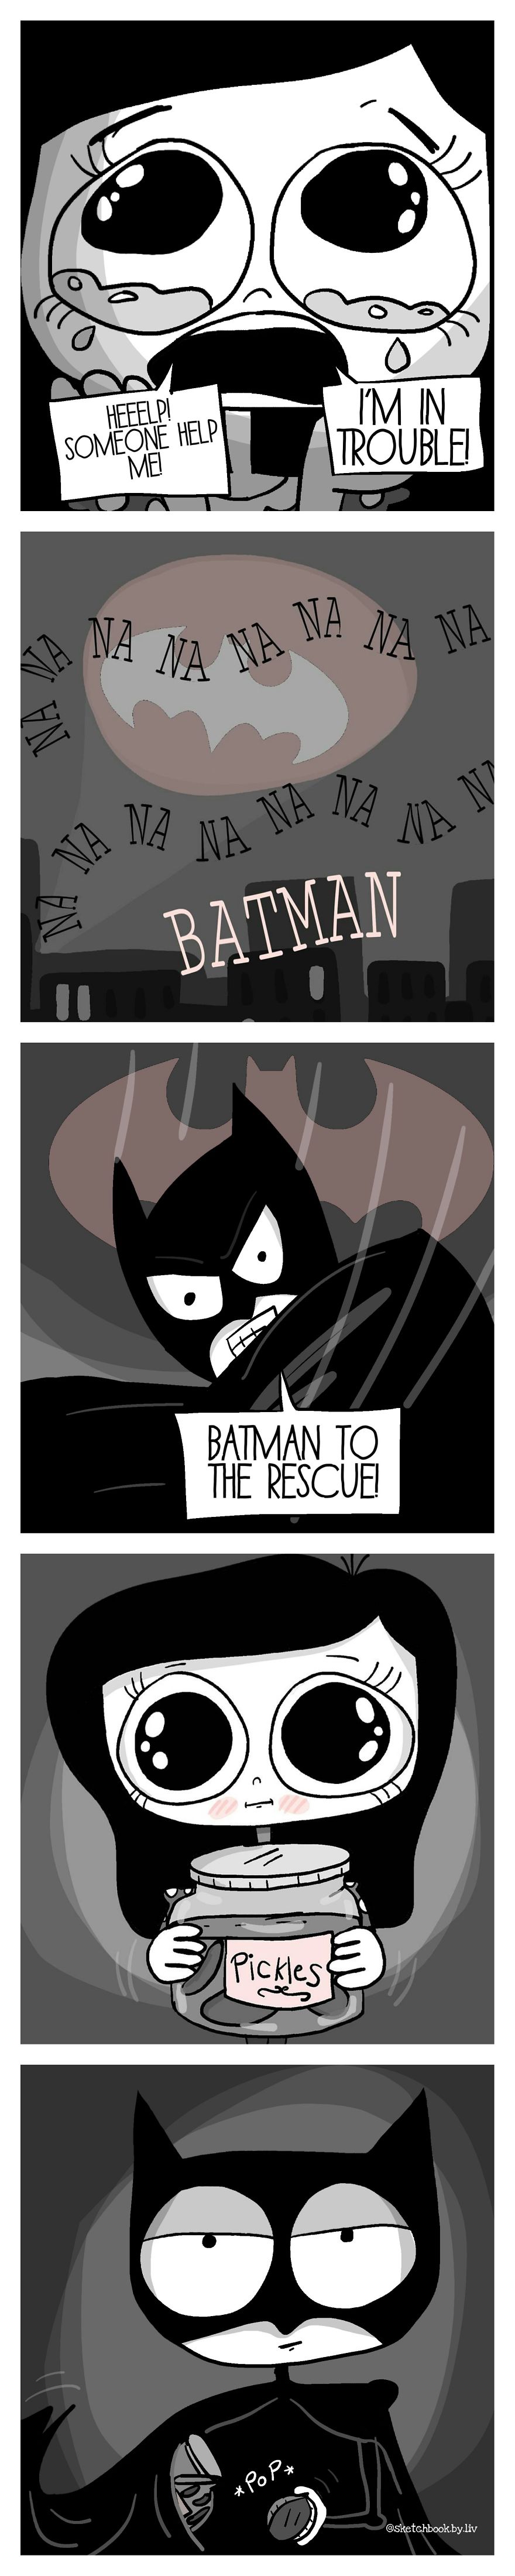 Batman To The Rescue